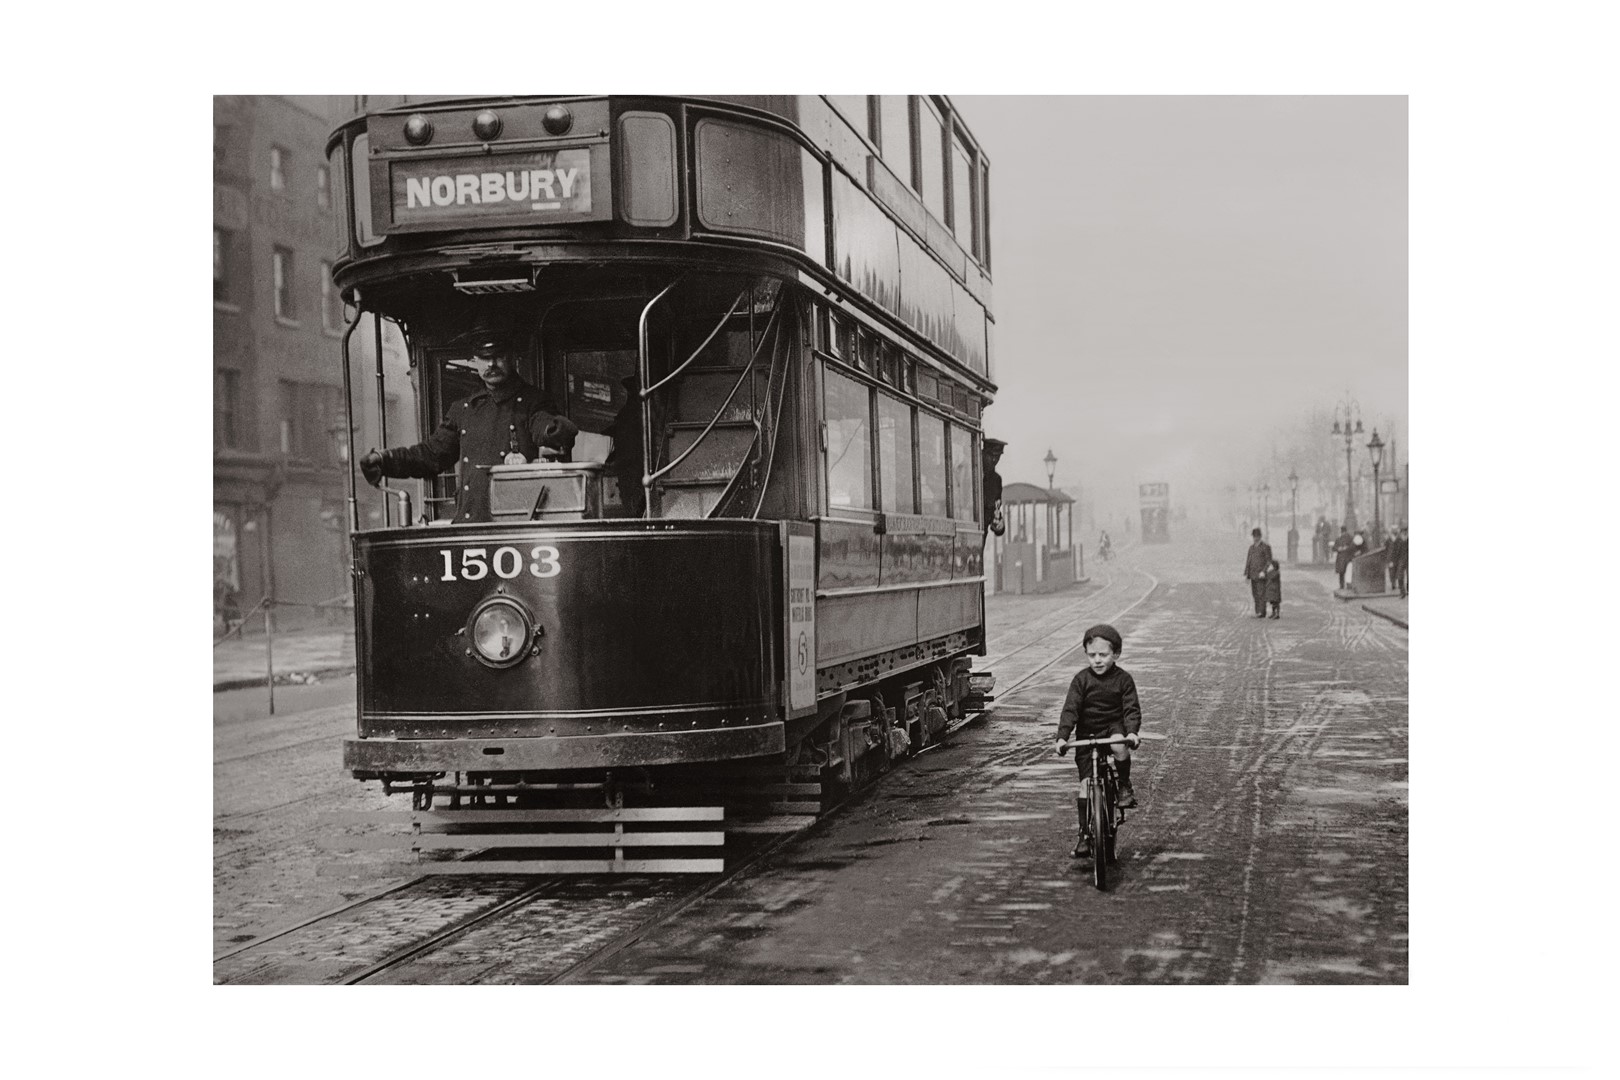 Photo ancienne noir et blanc ville n°02 cadre noir 40x60cm